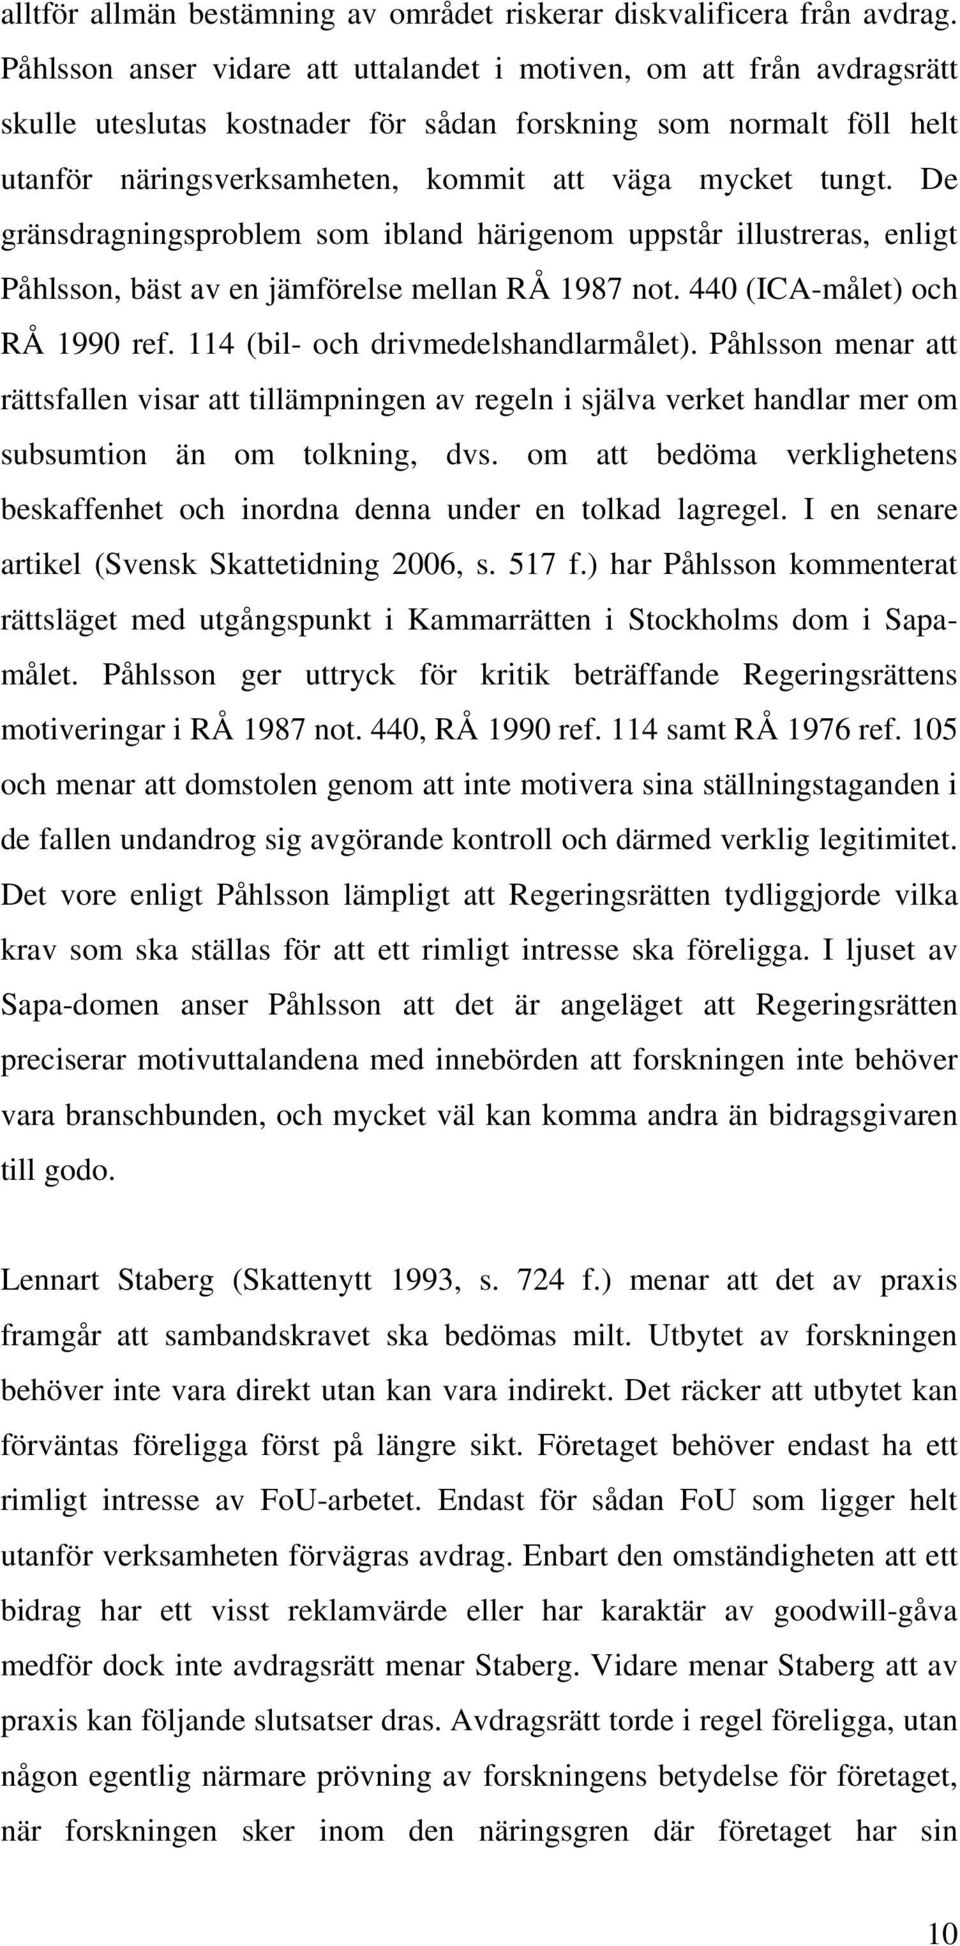 De gränsdragningsproblem som ibland härigenom uppstår illustreras, enligt Påhlsson, bäst av en jämförelse mellan RÅ 1987 not. 440 (ICA-målet) och RÅ 1990 ref. 114 (bil- och drivmedelshandlarmålet).